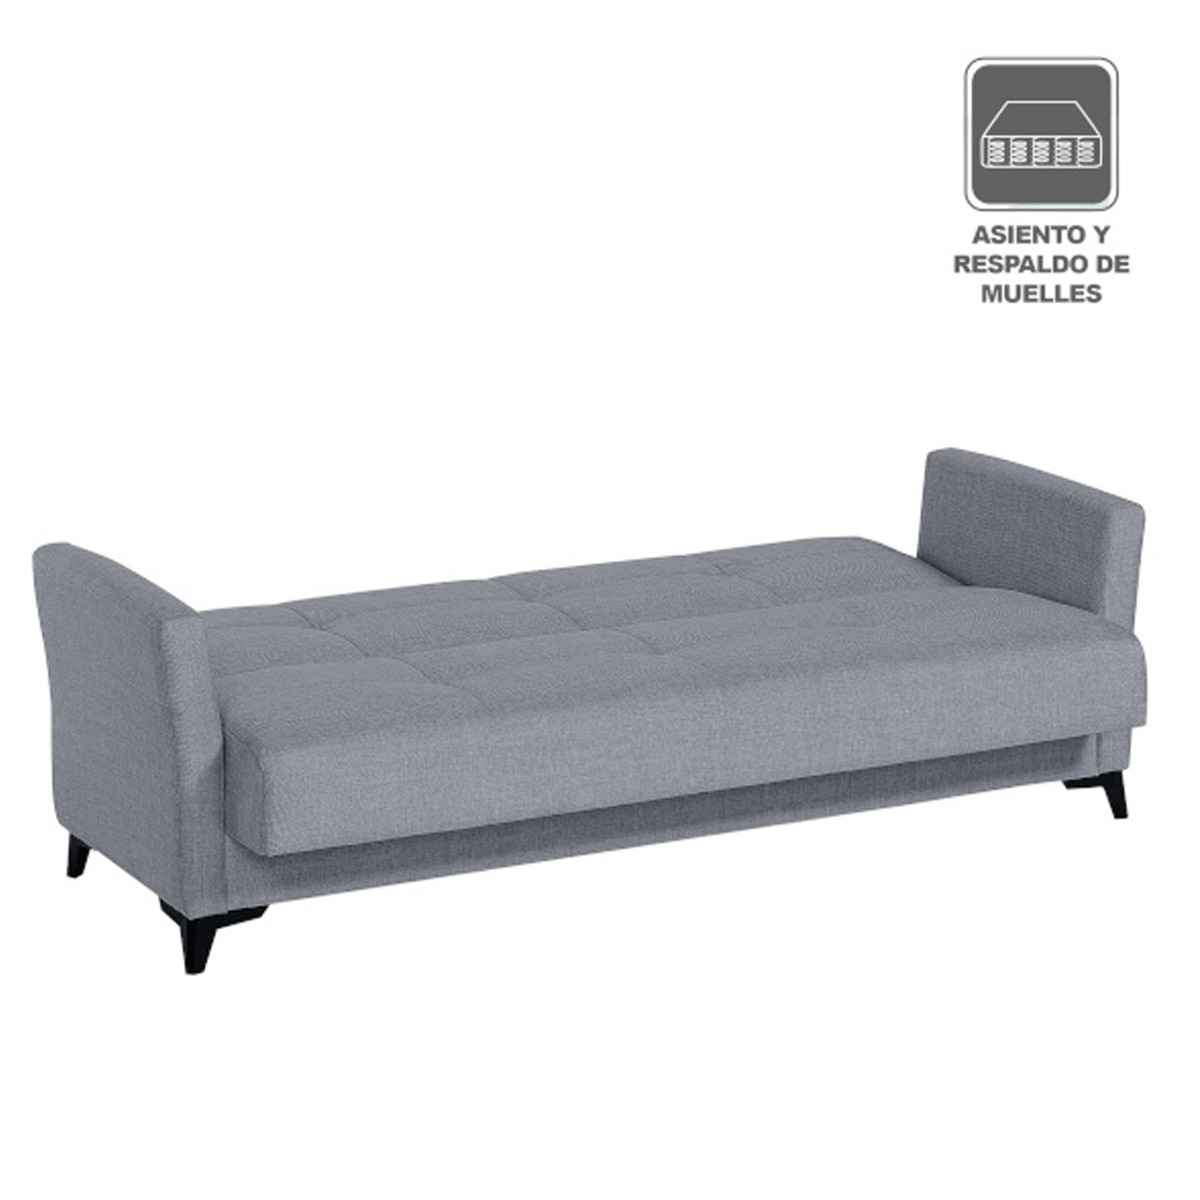 Sofá cama moderno con asiento y respaldo de muelles l Tifon.es